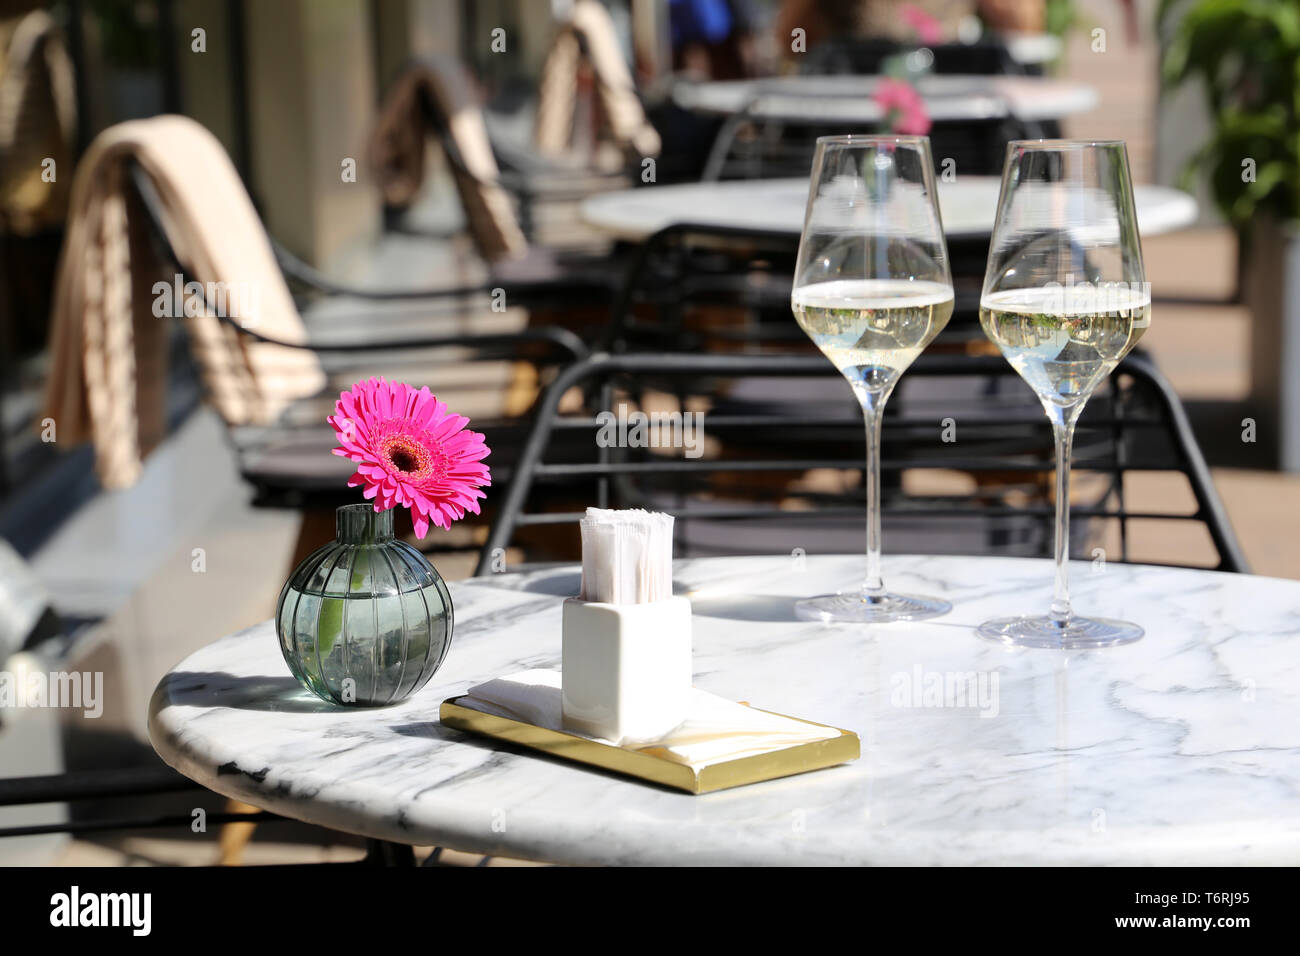 Set de table dans un restaurant de rue, repas romantique et élégant pour la célébration et la date. Deux verres de champagne, de serviettes et de fleurs sur une table Banque D'Images